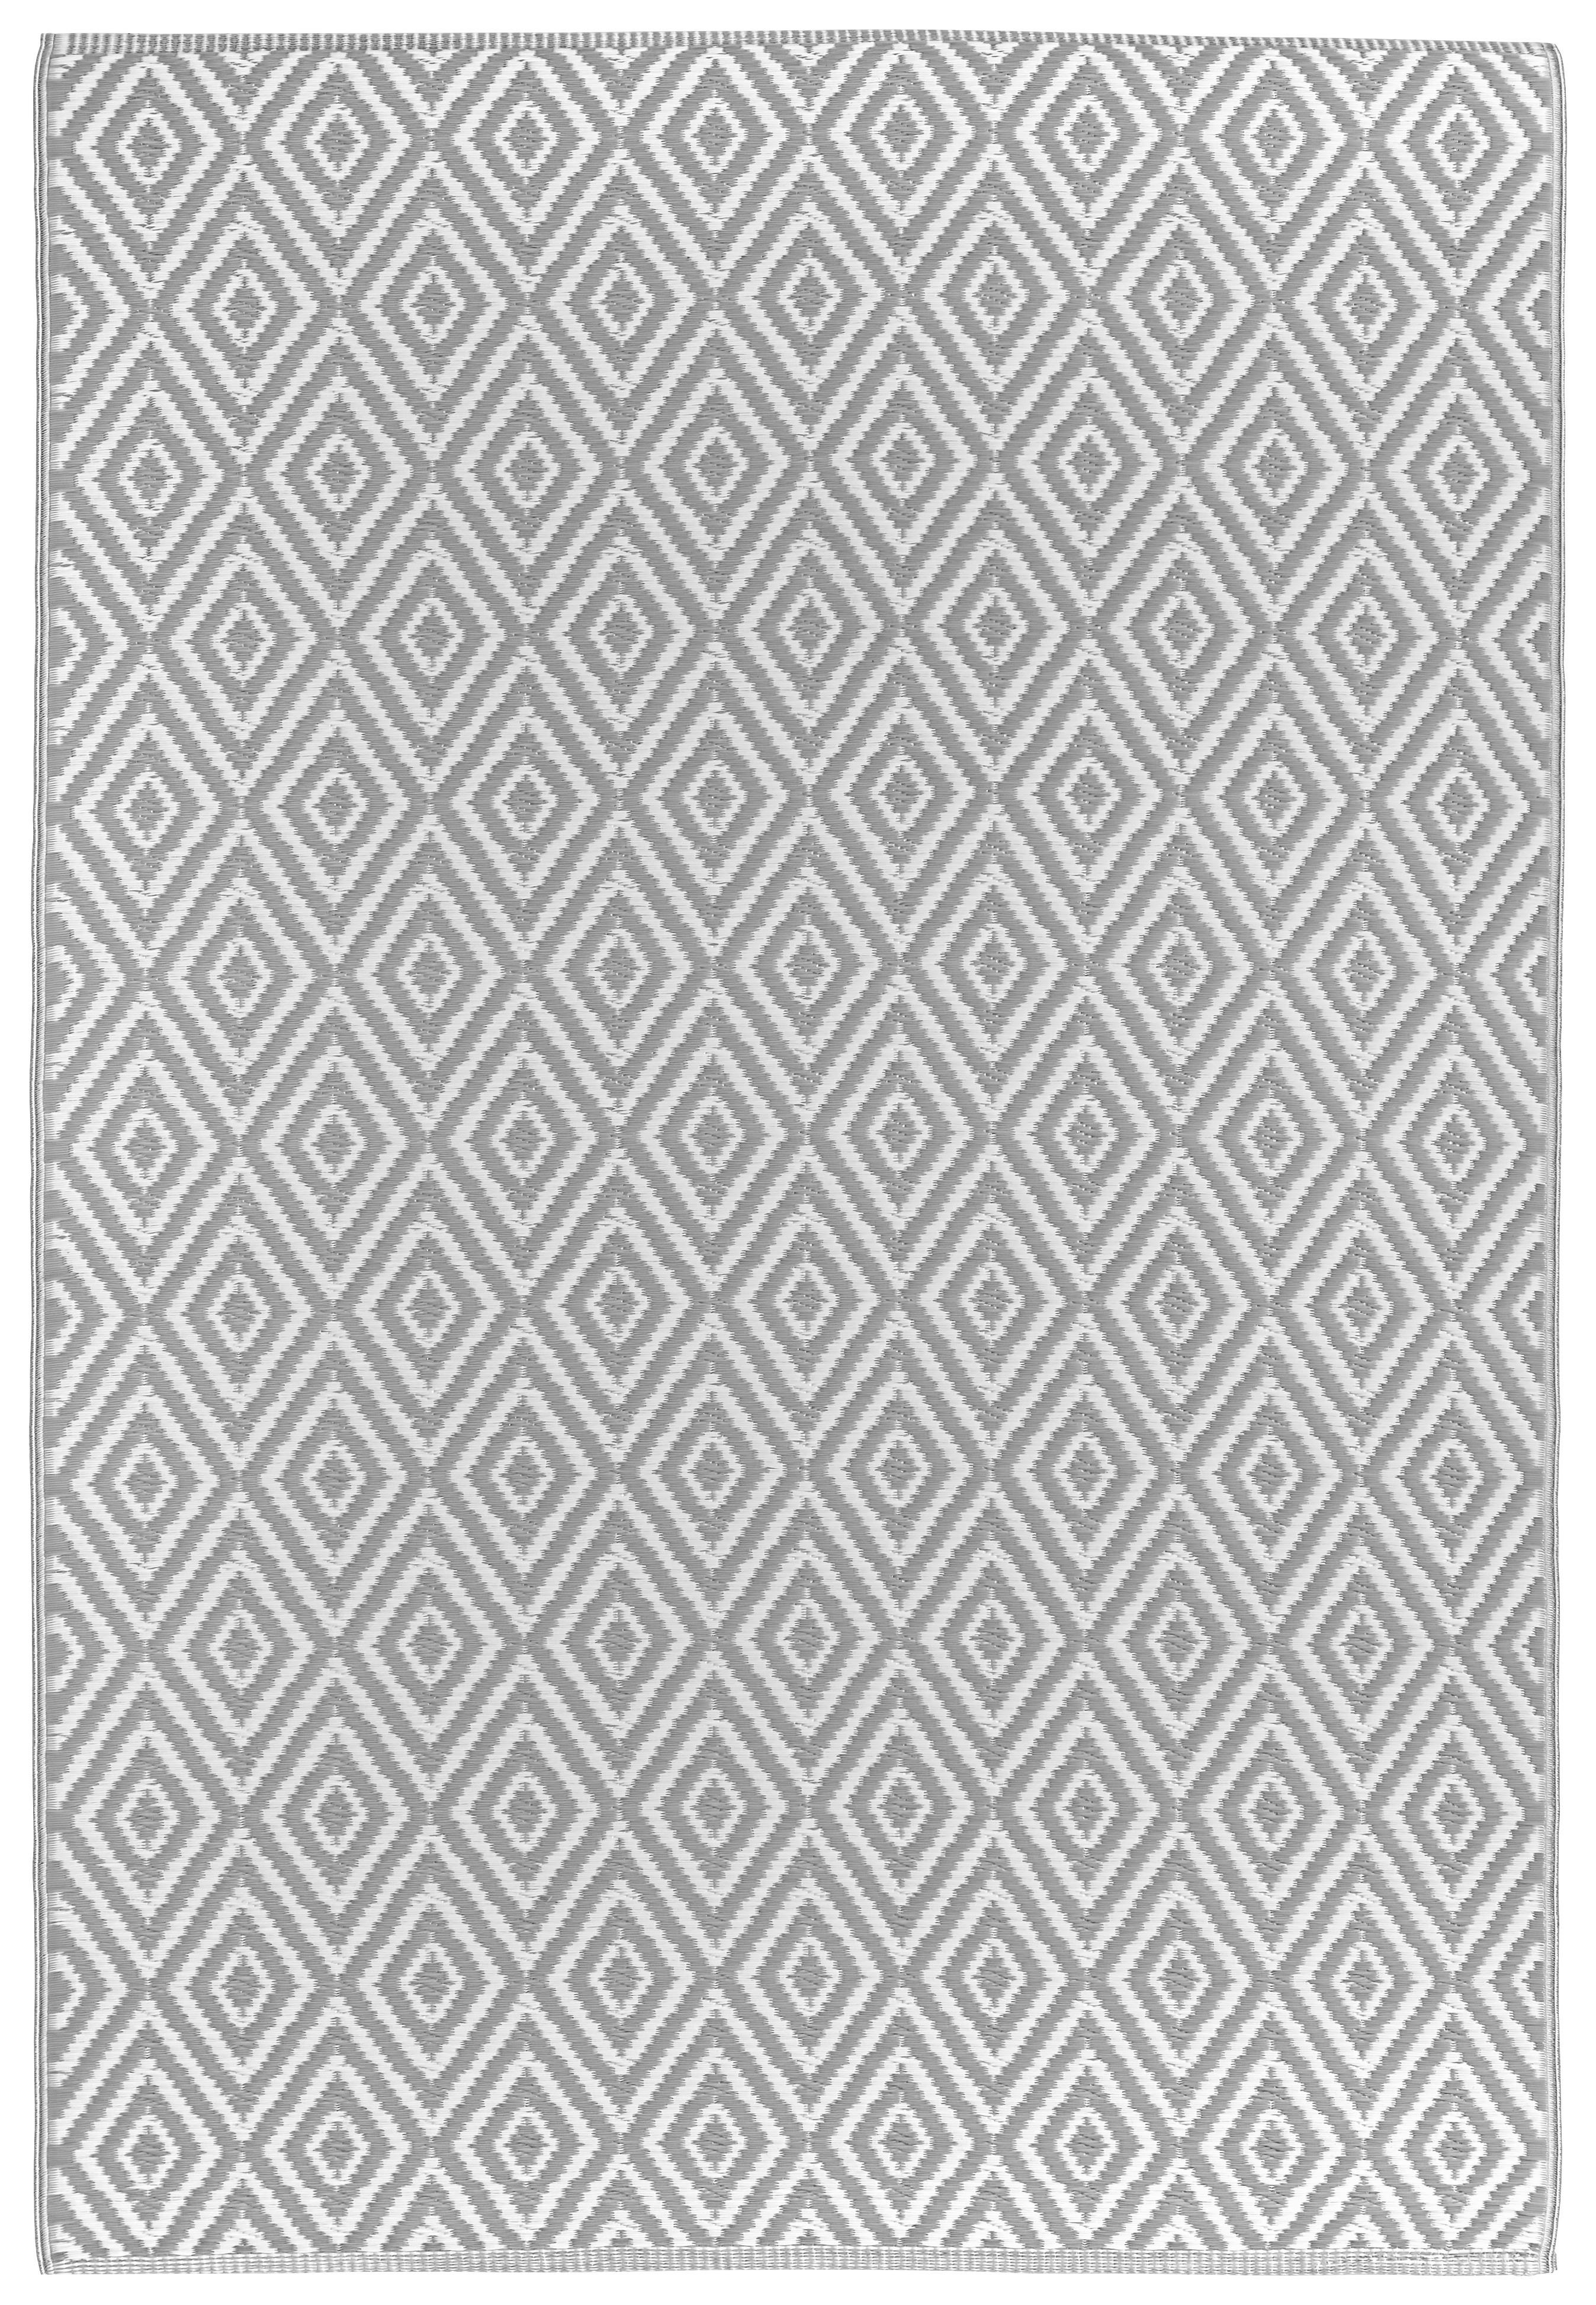 Boxxx VENKOVNÍ KOBEREC, 90/150 cm, šedá, bílá - šedá,bílá